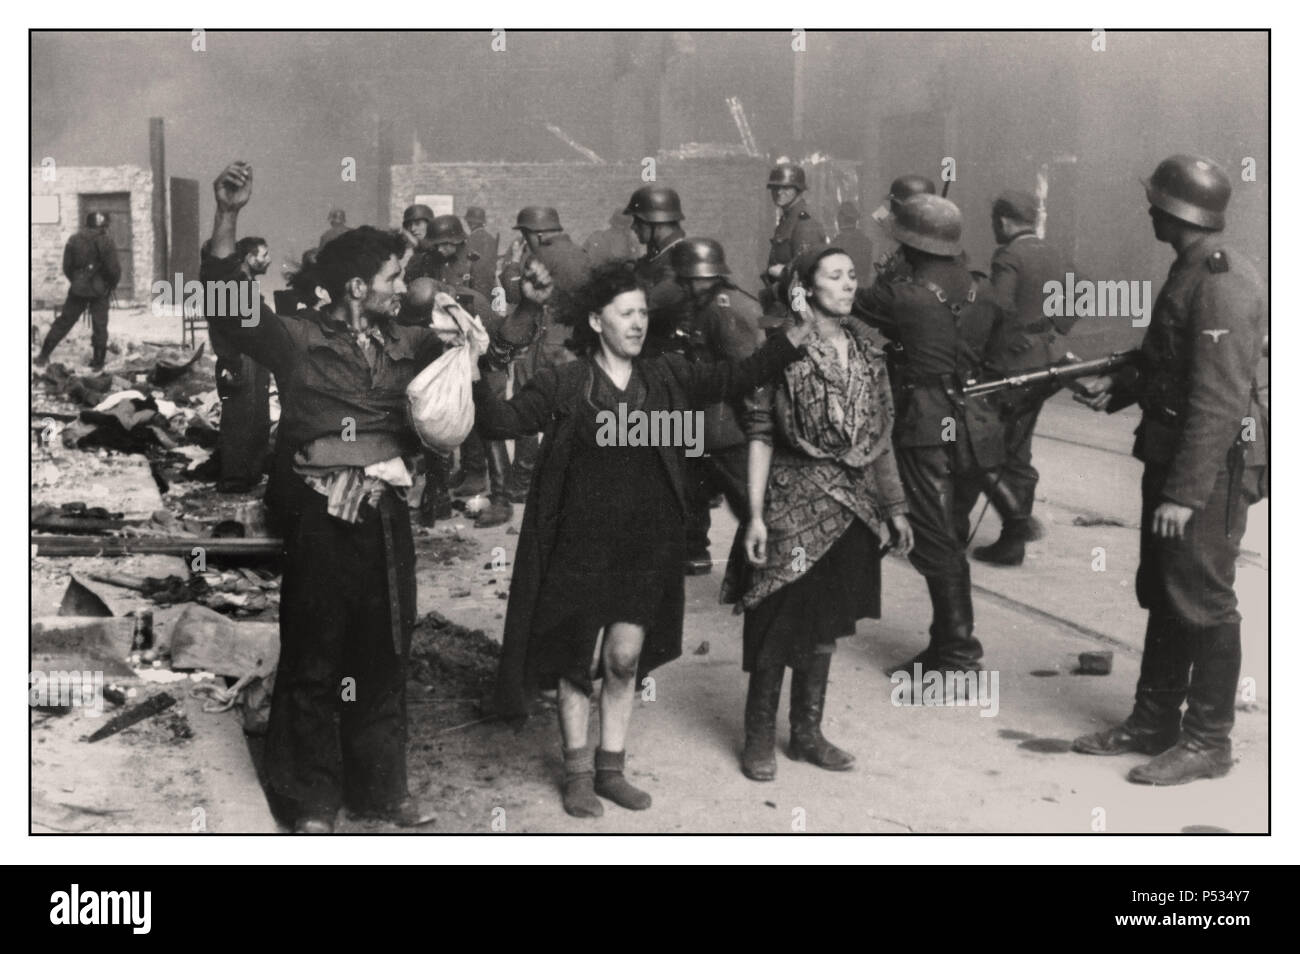 WARSCHAUER GHETTO 1943 mutige polnische Juden stehen in stiller Trotz, während die brutale Liquidation des Warschauer Ghettos durch die Nazi-Waffen-SS und Wehrmachtruppen um sie herum stattfindet 1943. Mai "das jüdische Viertel Warschaus ist nicht mehr!" ..schrieb Jürgen Stroop in dem STROOP-BERICHT für Heinrich Himmler über die brutale, unmenschliche Liquidation von Warschau Ghetto im Mai 1943. Dies war eine Gräueltat und ein von den Nazis dokumentiertes Kriegsverbrechen, das vom US-Anwalt für die Verfolgung der Achsenkriminalität als Beweis verwendet wurde. Nürnberg Deutschland Stockfoto